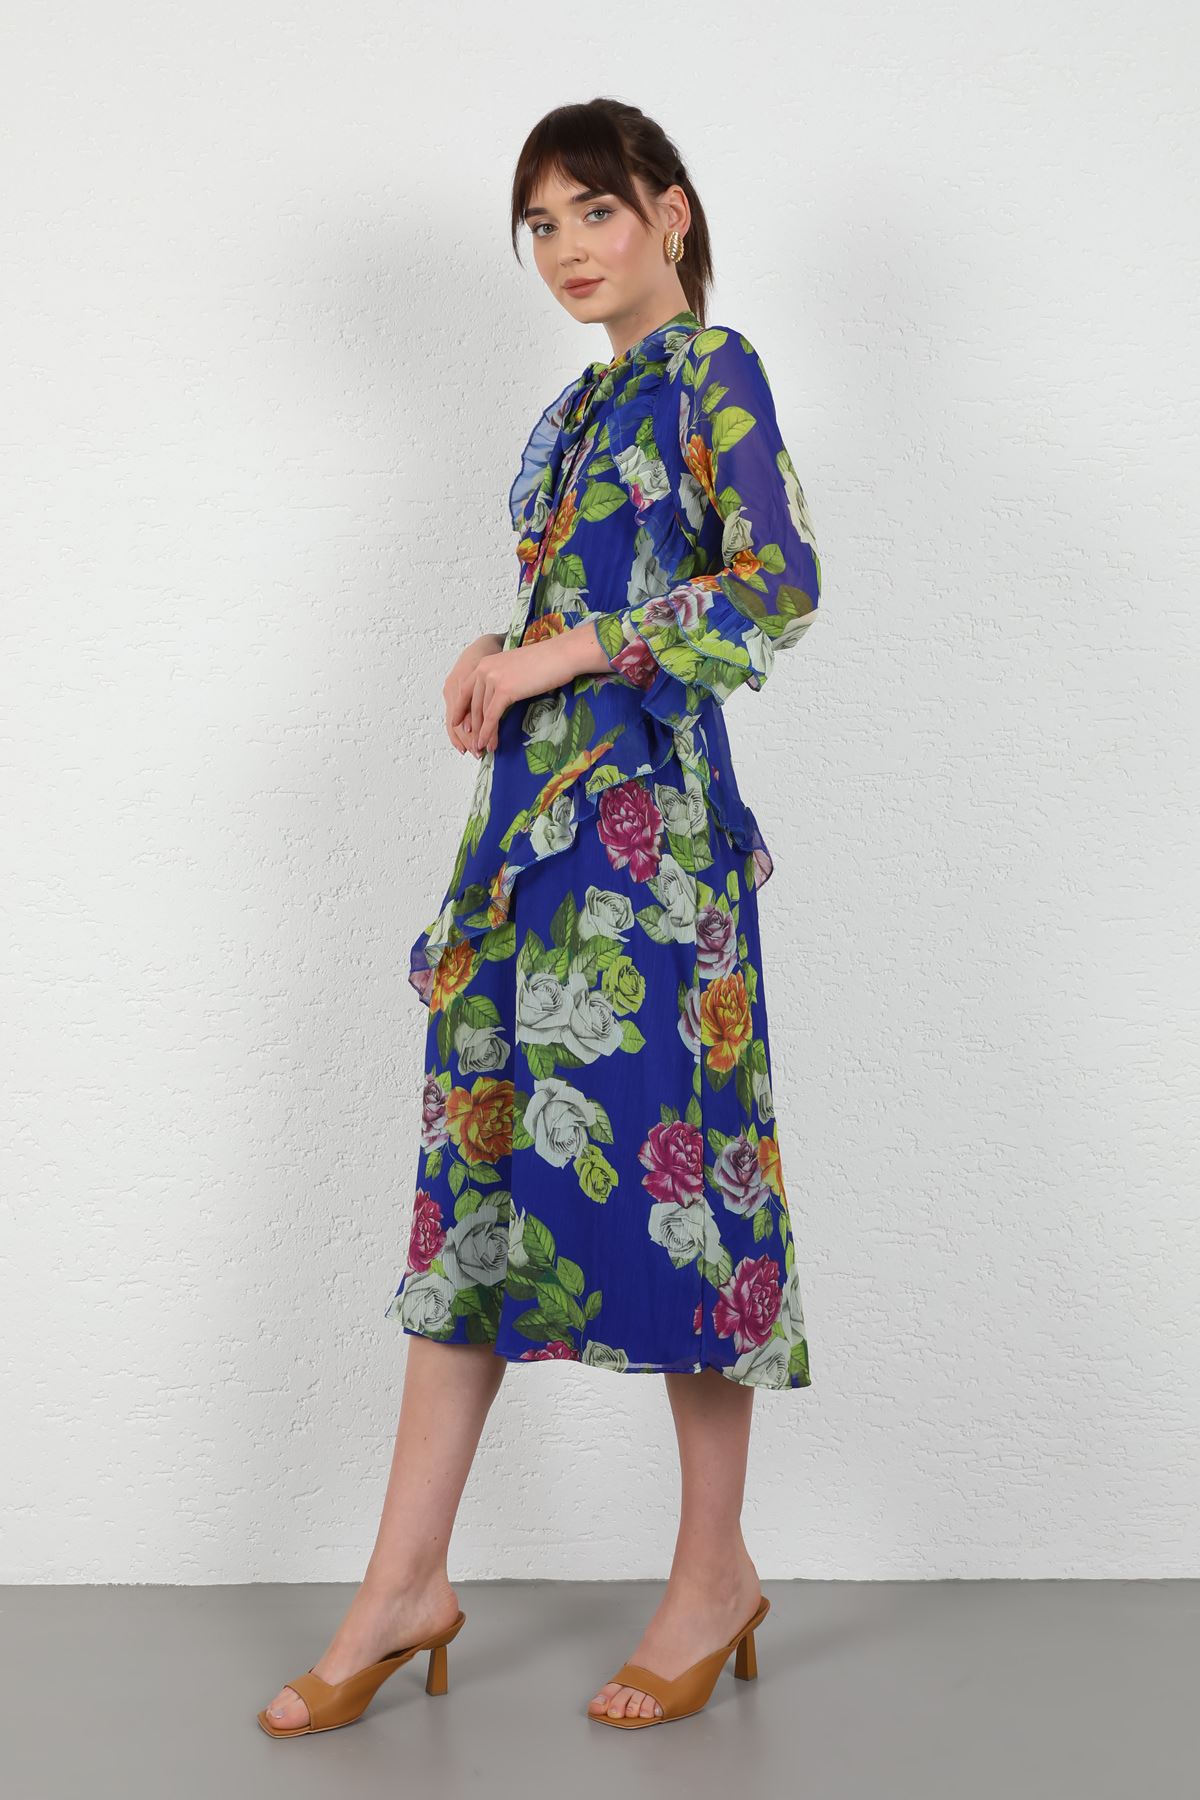 Yoryo Chiffon Fabric Sleeve Detail Long Women Dress-Royal